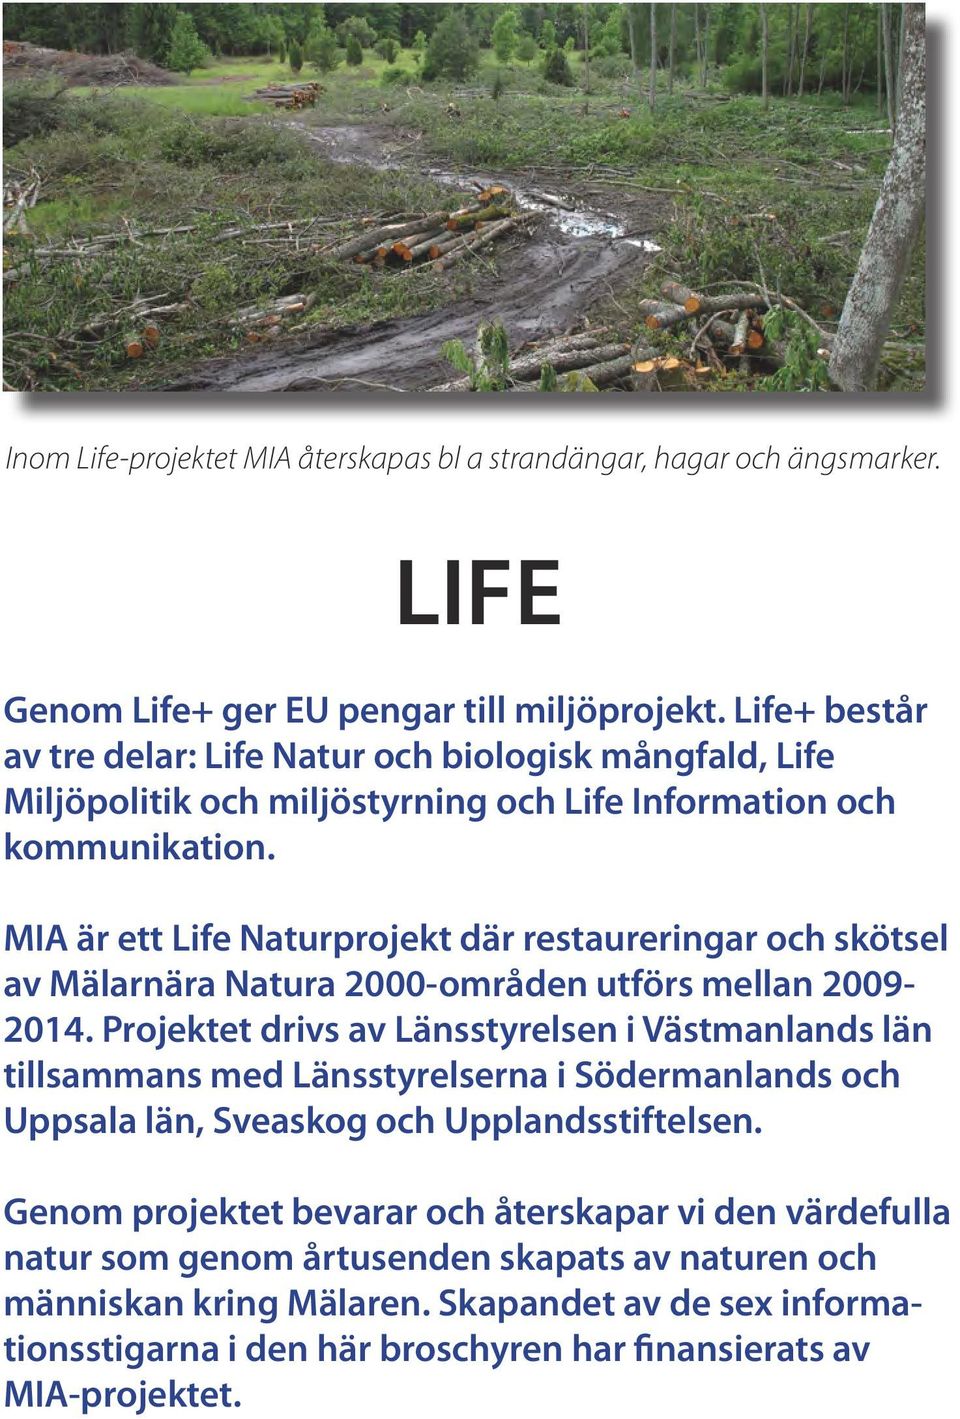 MIA är ett Life Naturprojekt där restaureringar och skötsel av Mälarnära Natura 2000-områden utförs mellan 2009-2014.